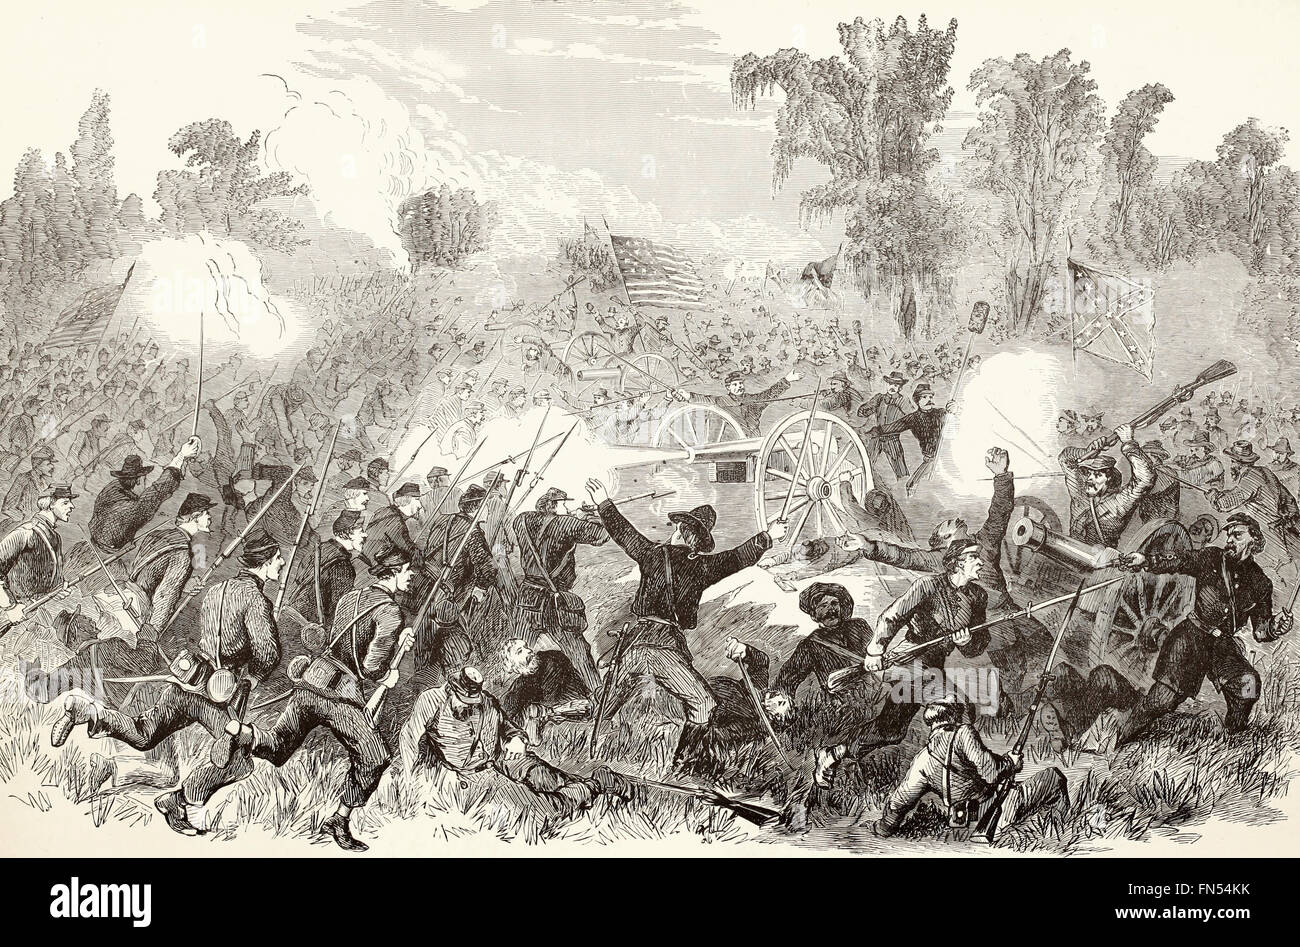 Schlacht von Baker Creek, 10. Mai 1862 - Niederlage der Eidgenossen unter Pemberton durch General Grant. USA Bürgerkrieg Stockfoto